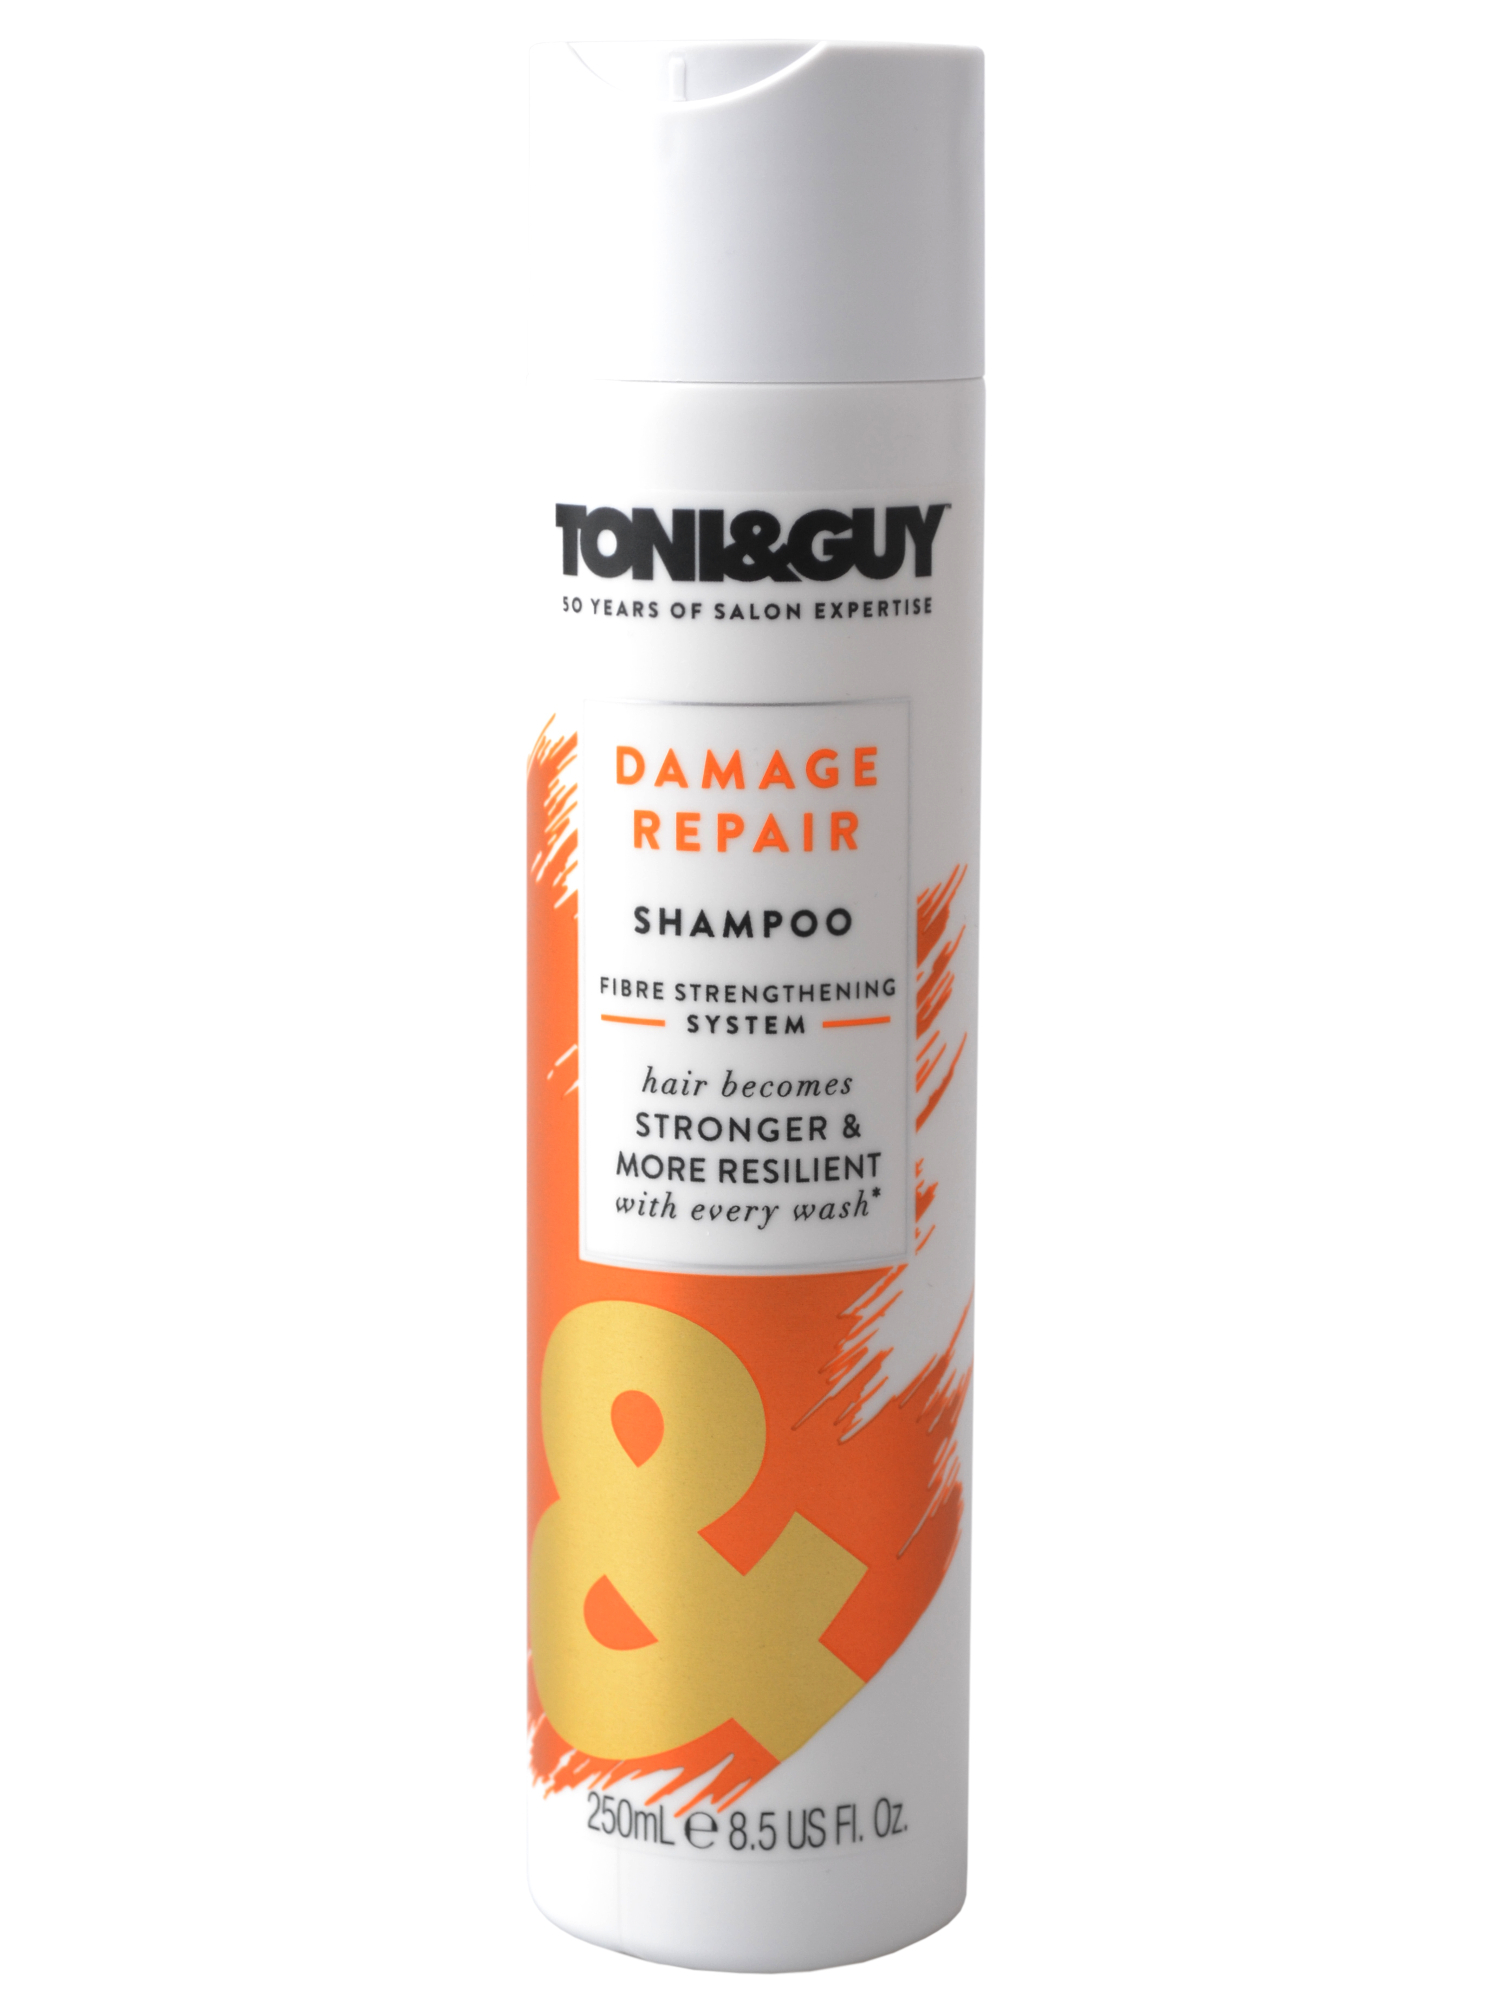 Šampon pro poškozené vlasy Toni a Guy Damage Repair - 250 ml (67521581, ULTG67521605) - Toni&Guy + DÁREK ZDARMA